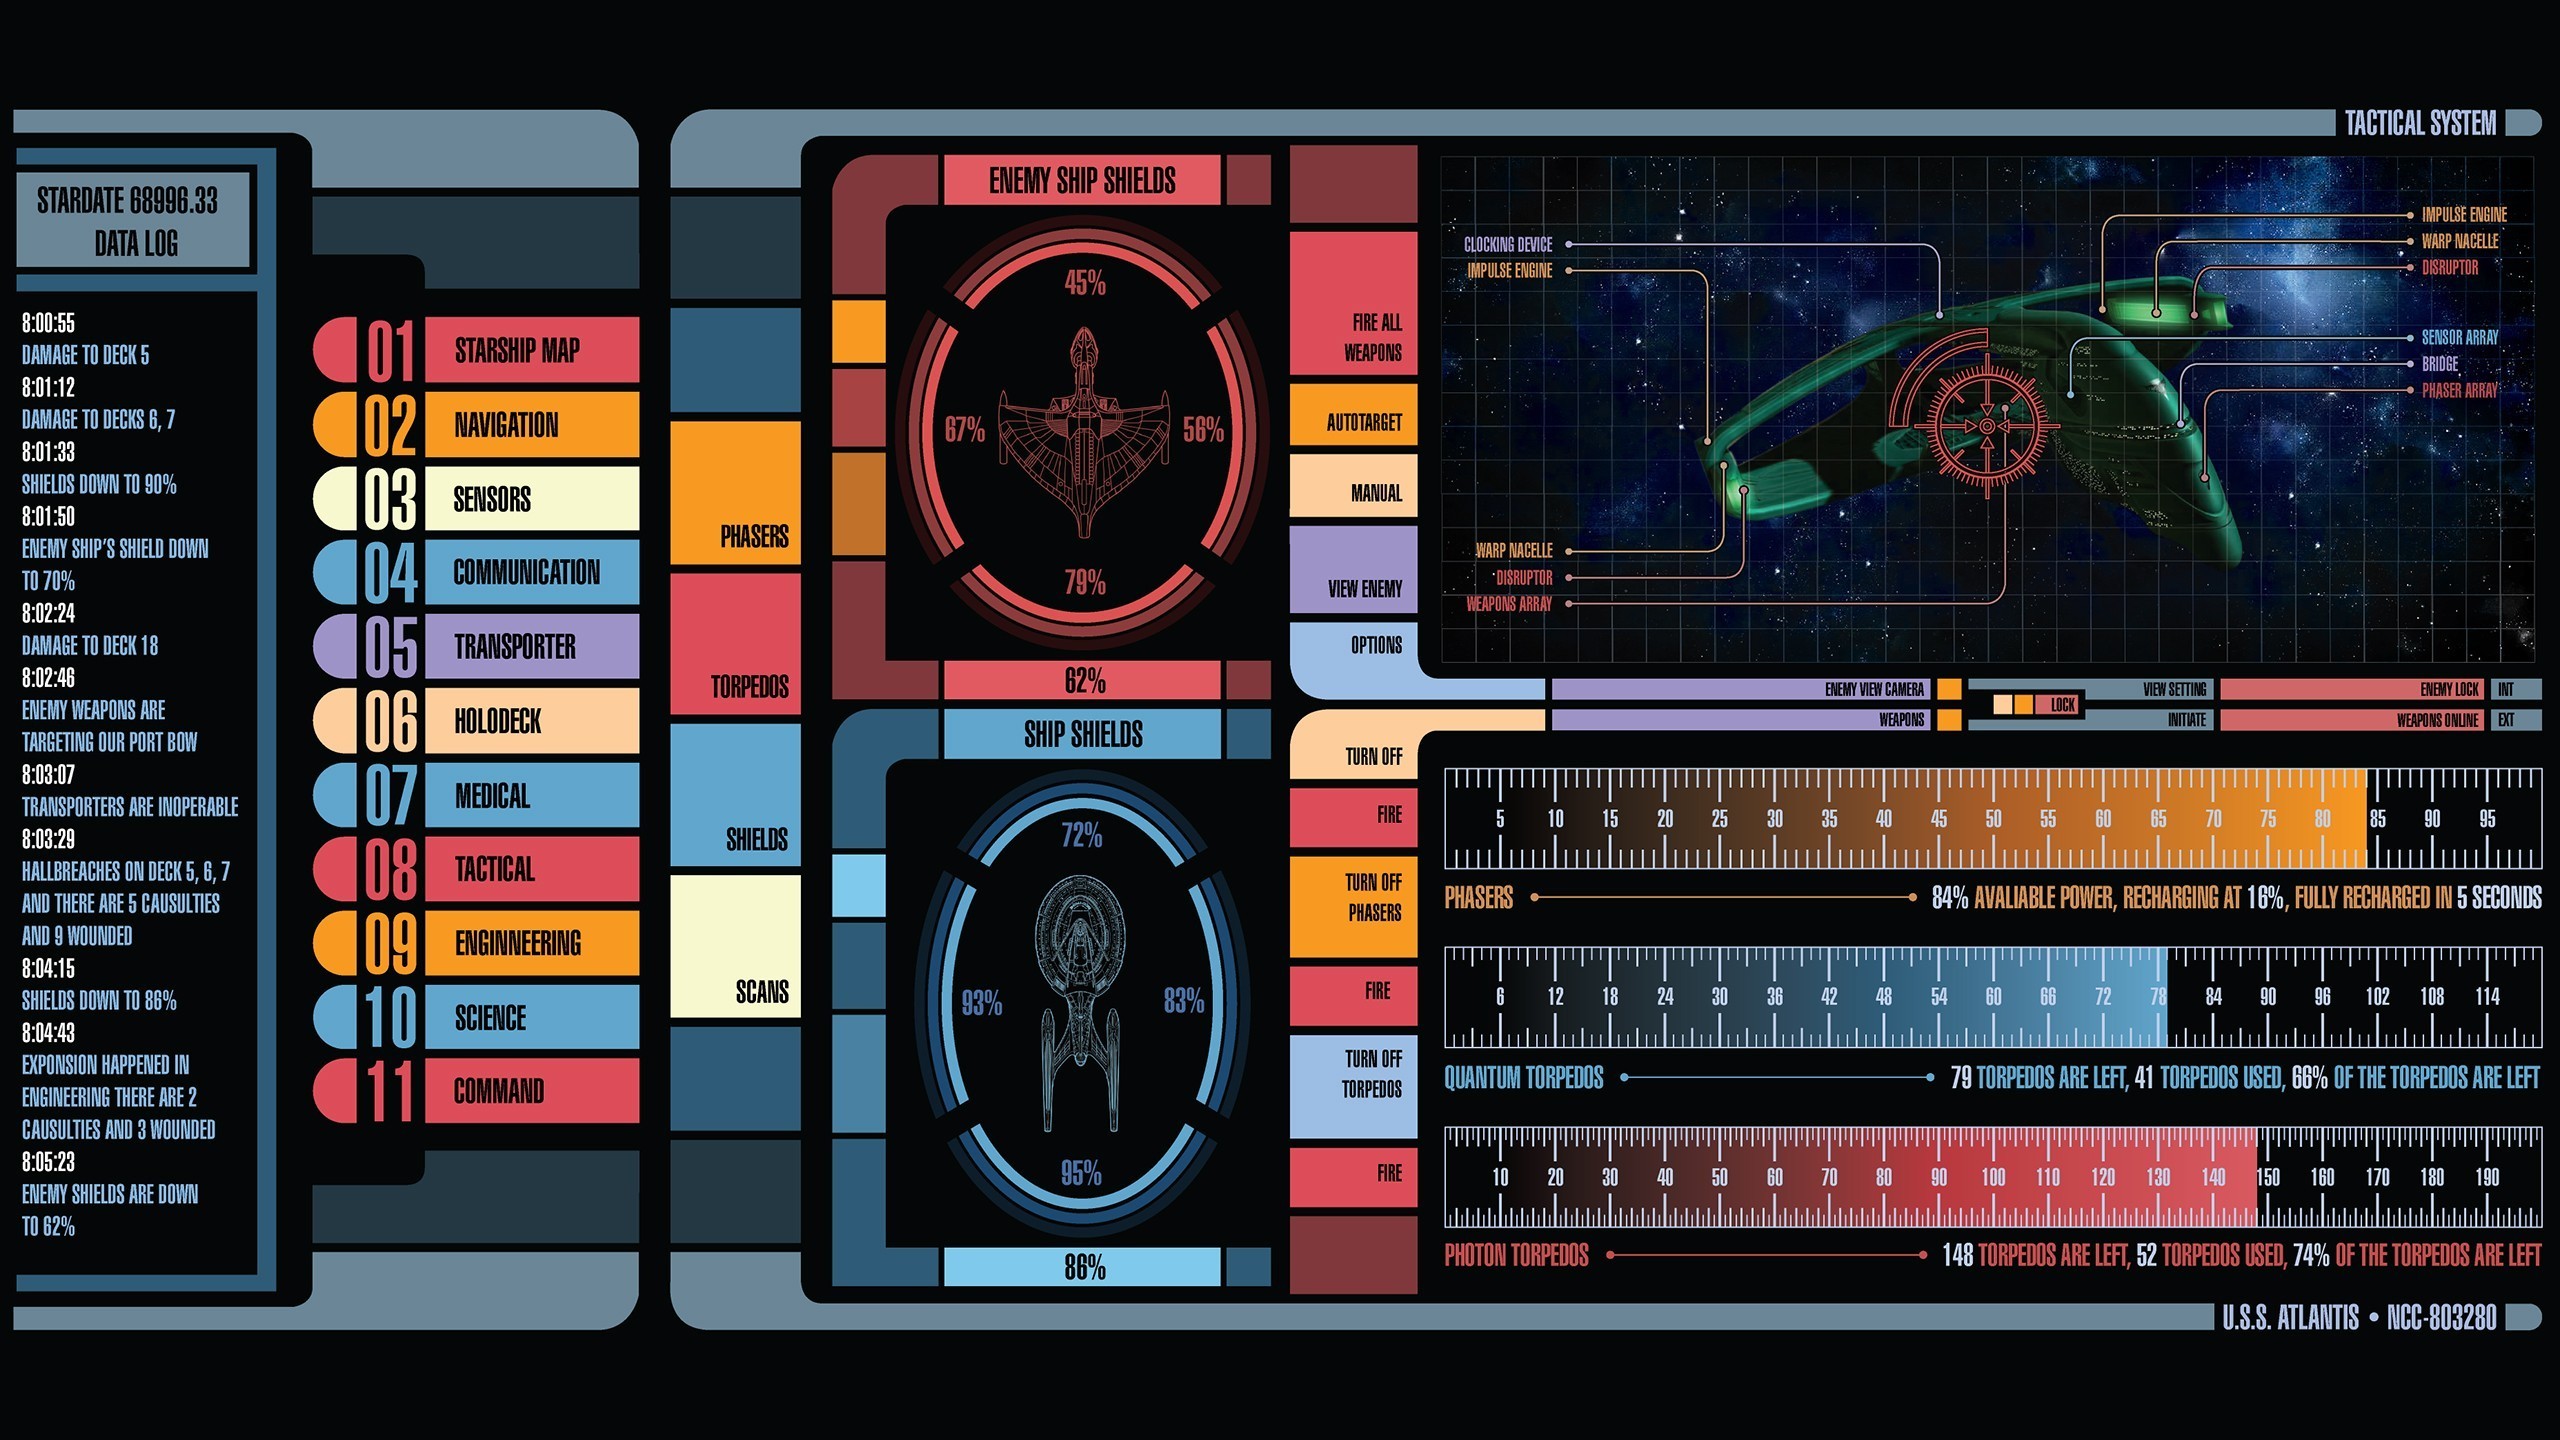 2560x1440 1920x1080 Star Trek LCARS Wallpaper